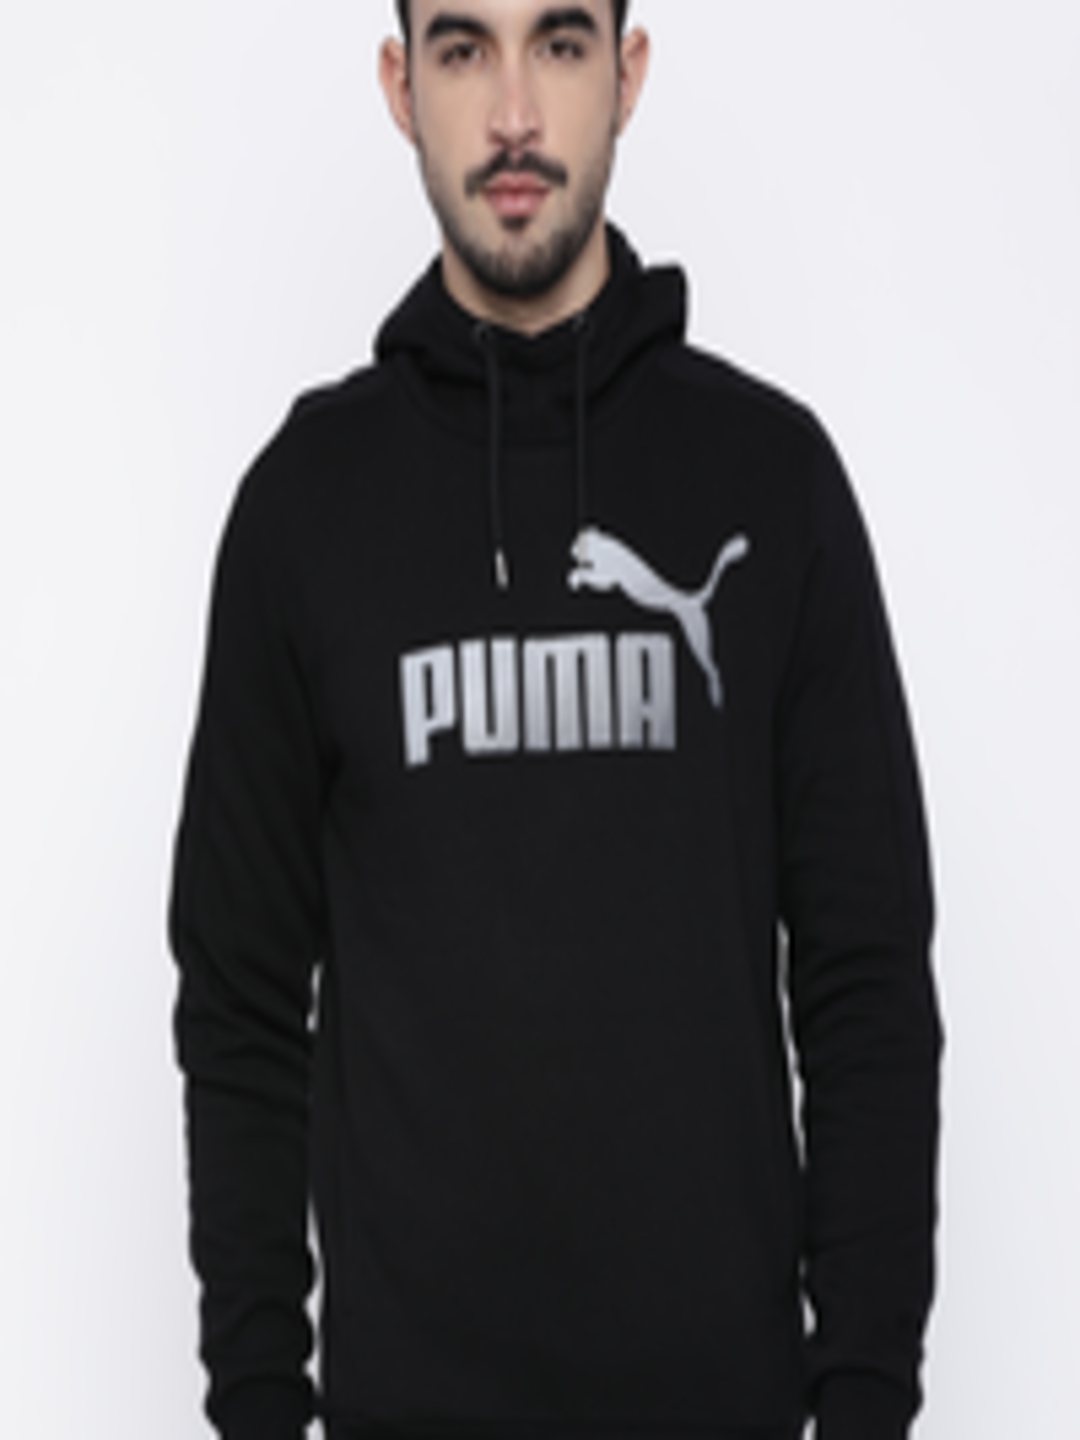 Buy Puma Men Black Printed Hooded Sweatshirt - Sweatshirts for Men ...